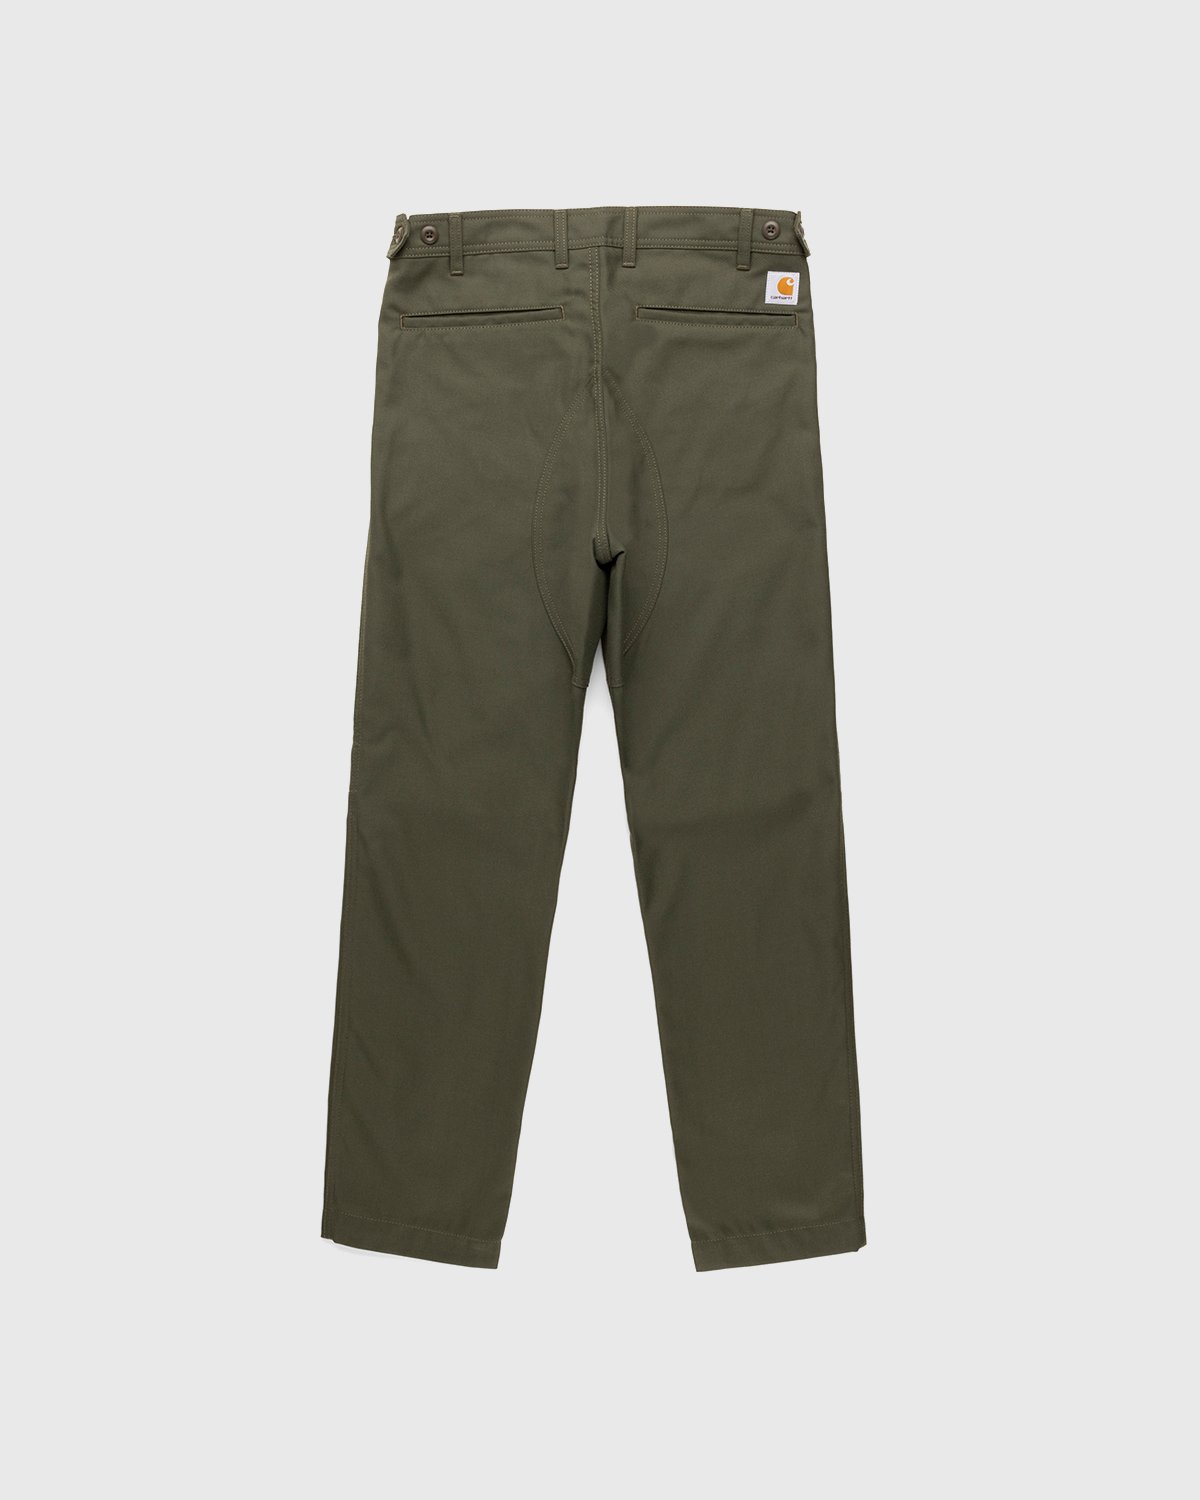 Carhartt WIP - Barton Pant Cypress - Clothing - Green - Image 2